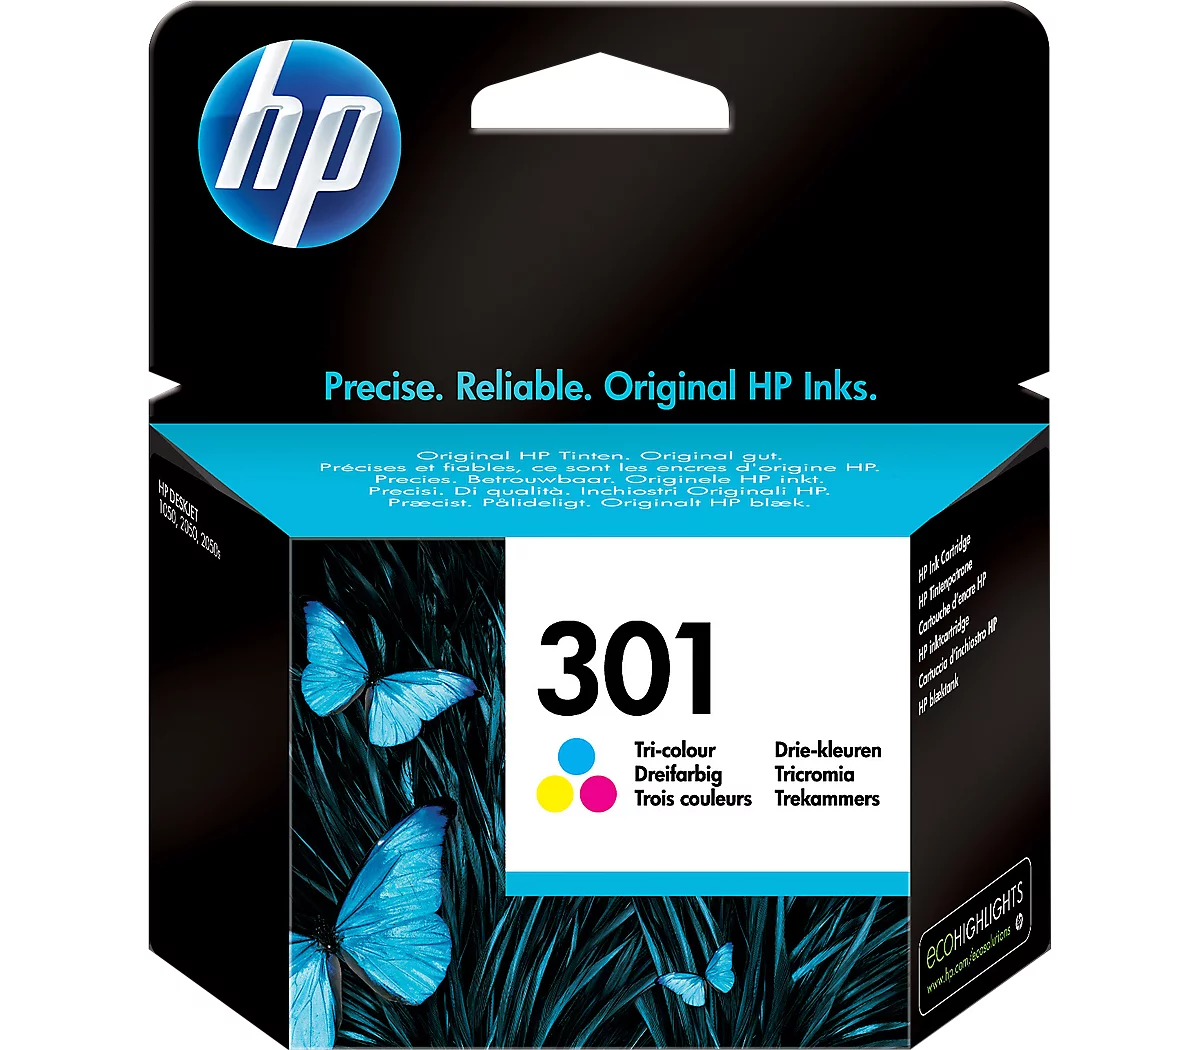 Acheter en ligne HP 912XL (Noir, 1 pièce) à bons prix et en toute sécurité  